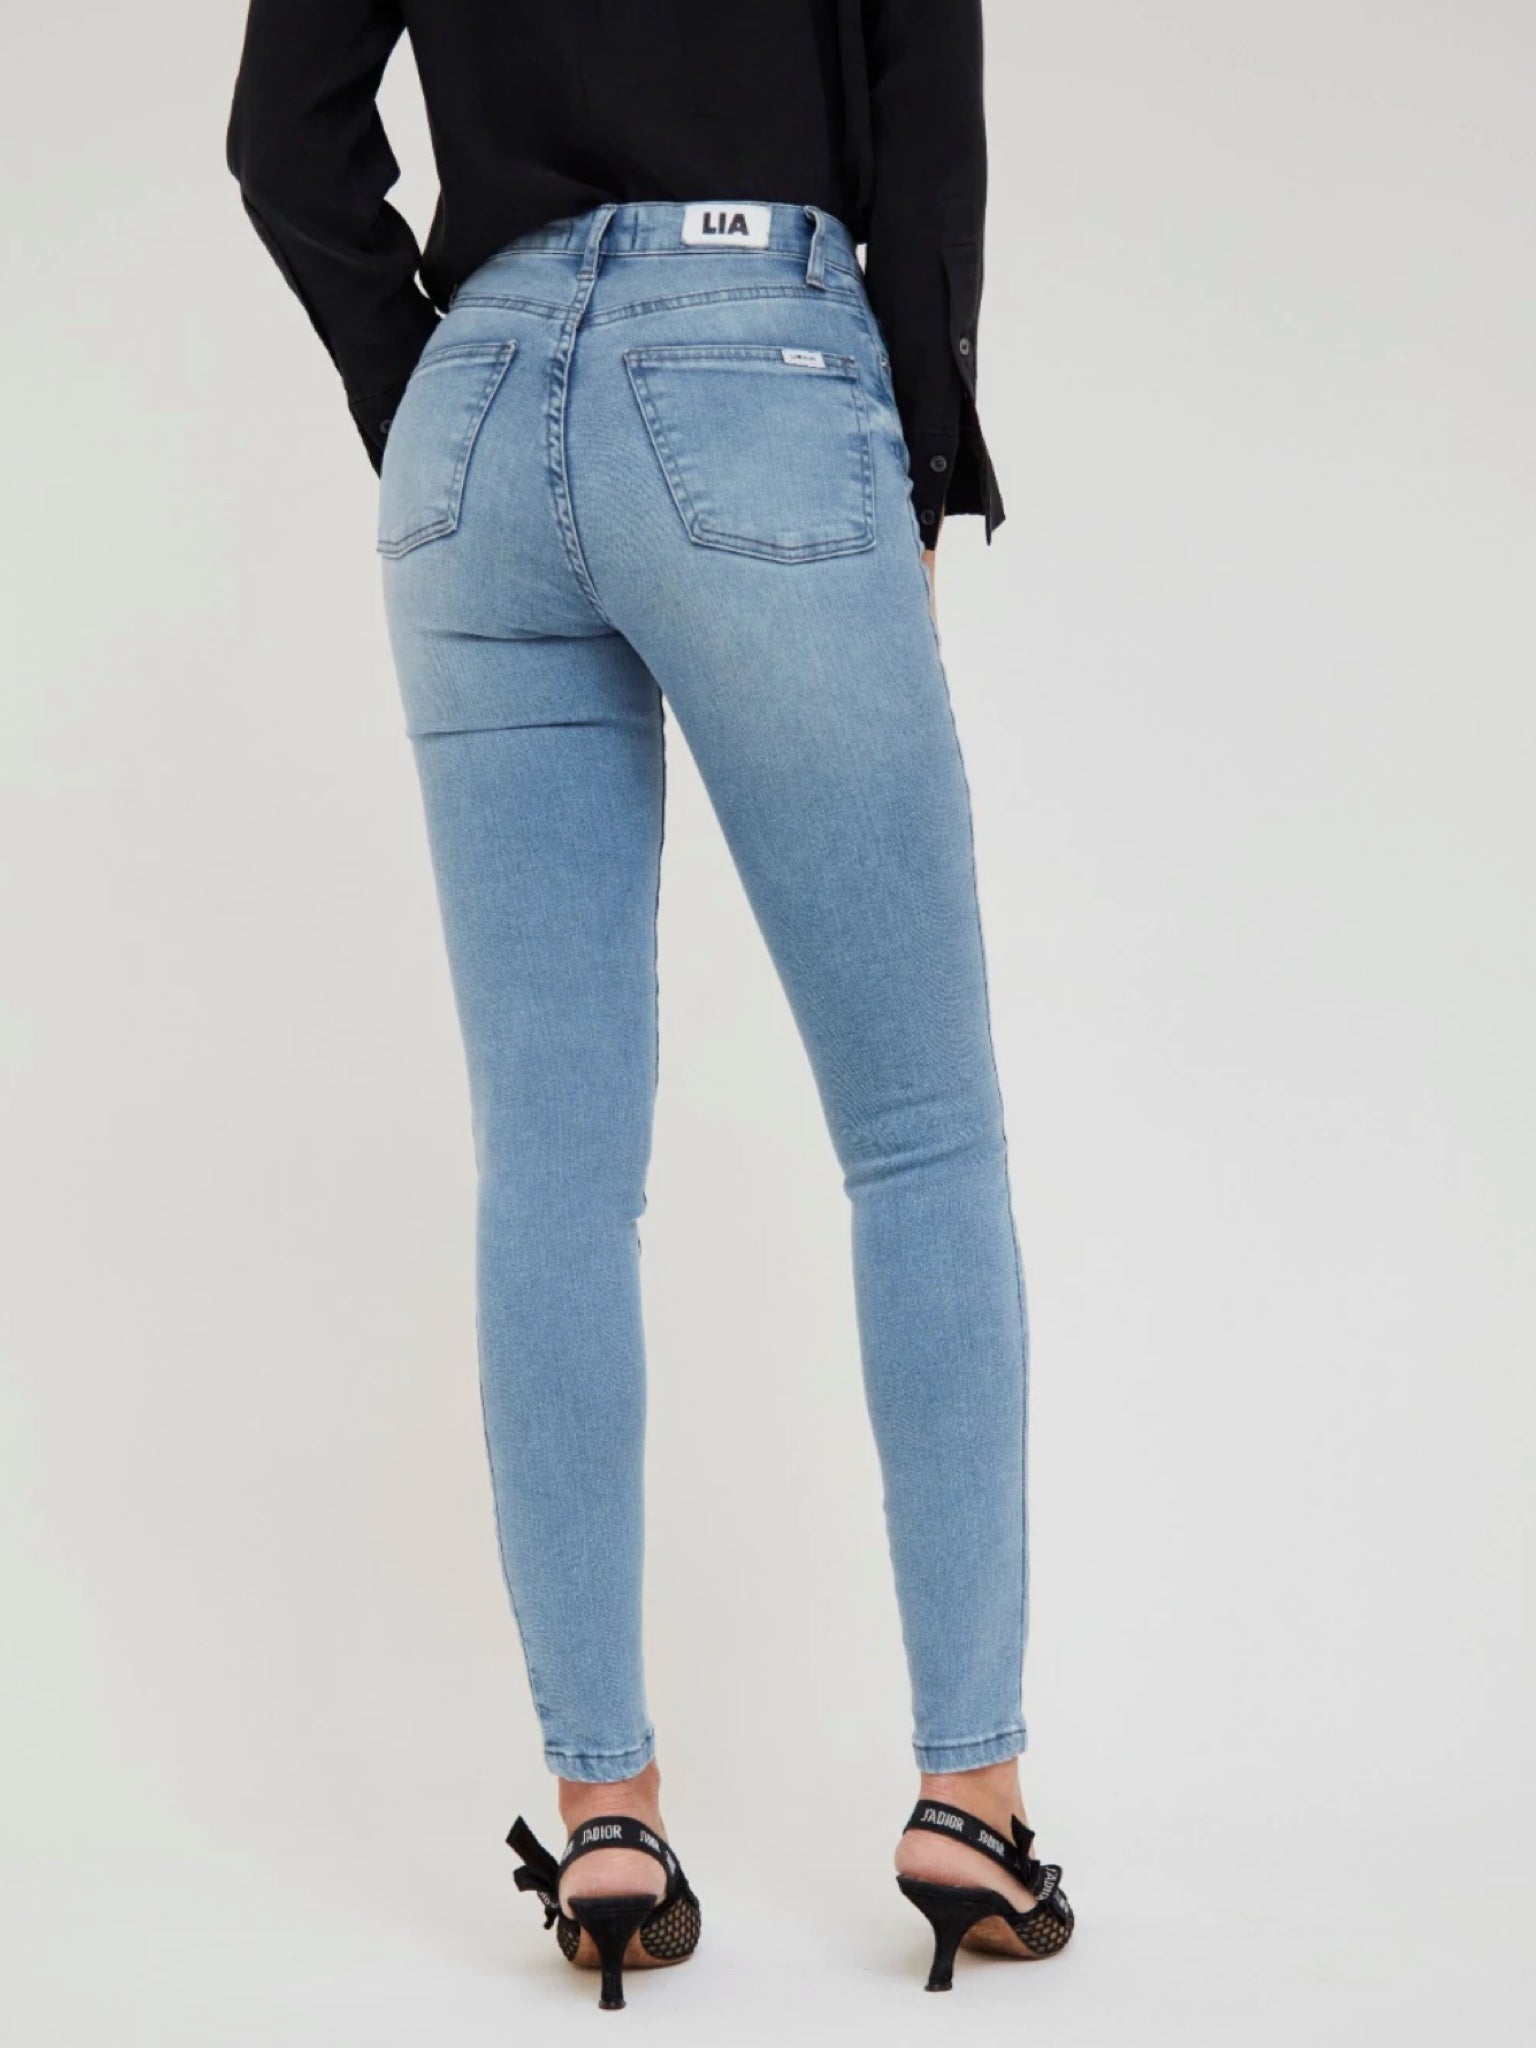 Jeans Lia Lady Skinny